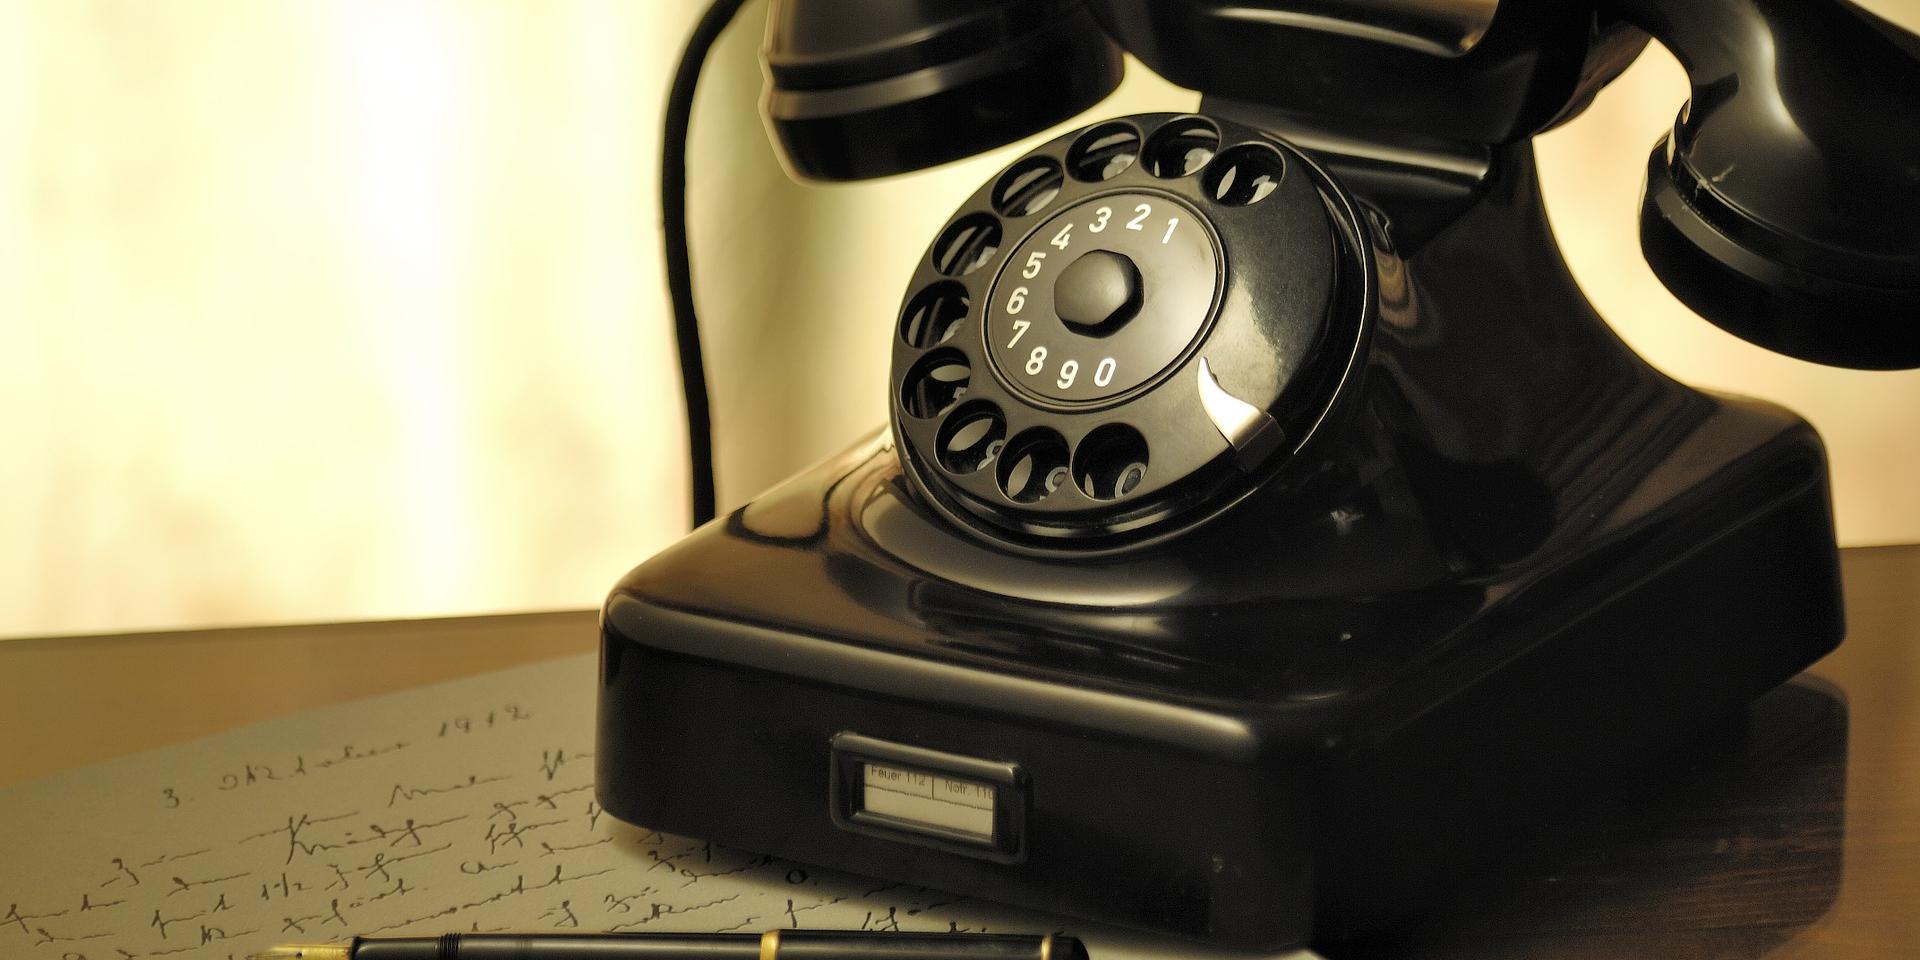 Telefon (c) Bild von Stefan Kuhn auf Pixabay